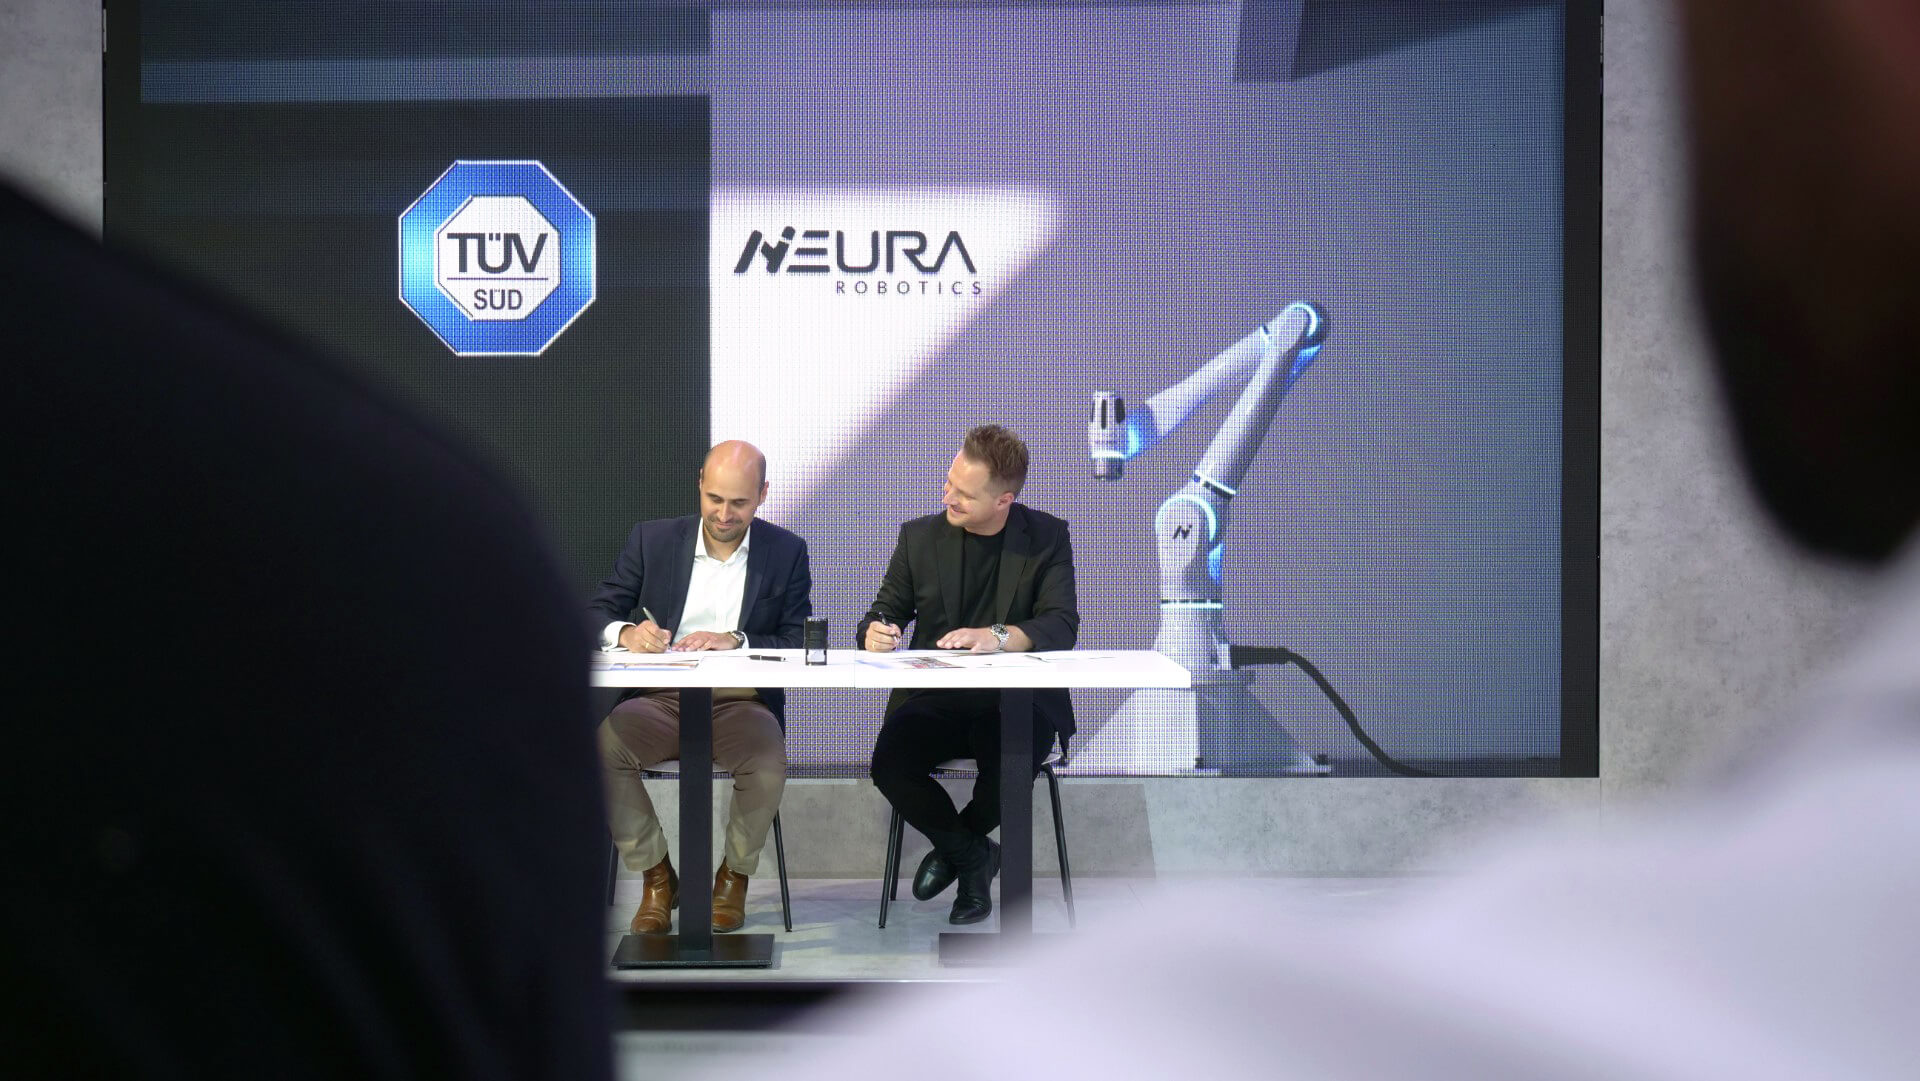 TÜV SÜD and NEURA Robotics signing partnership